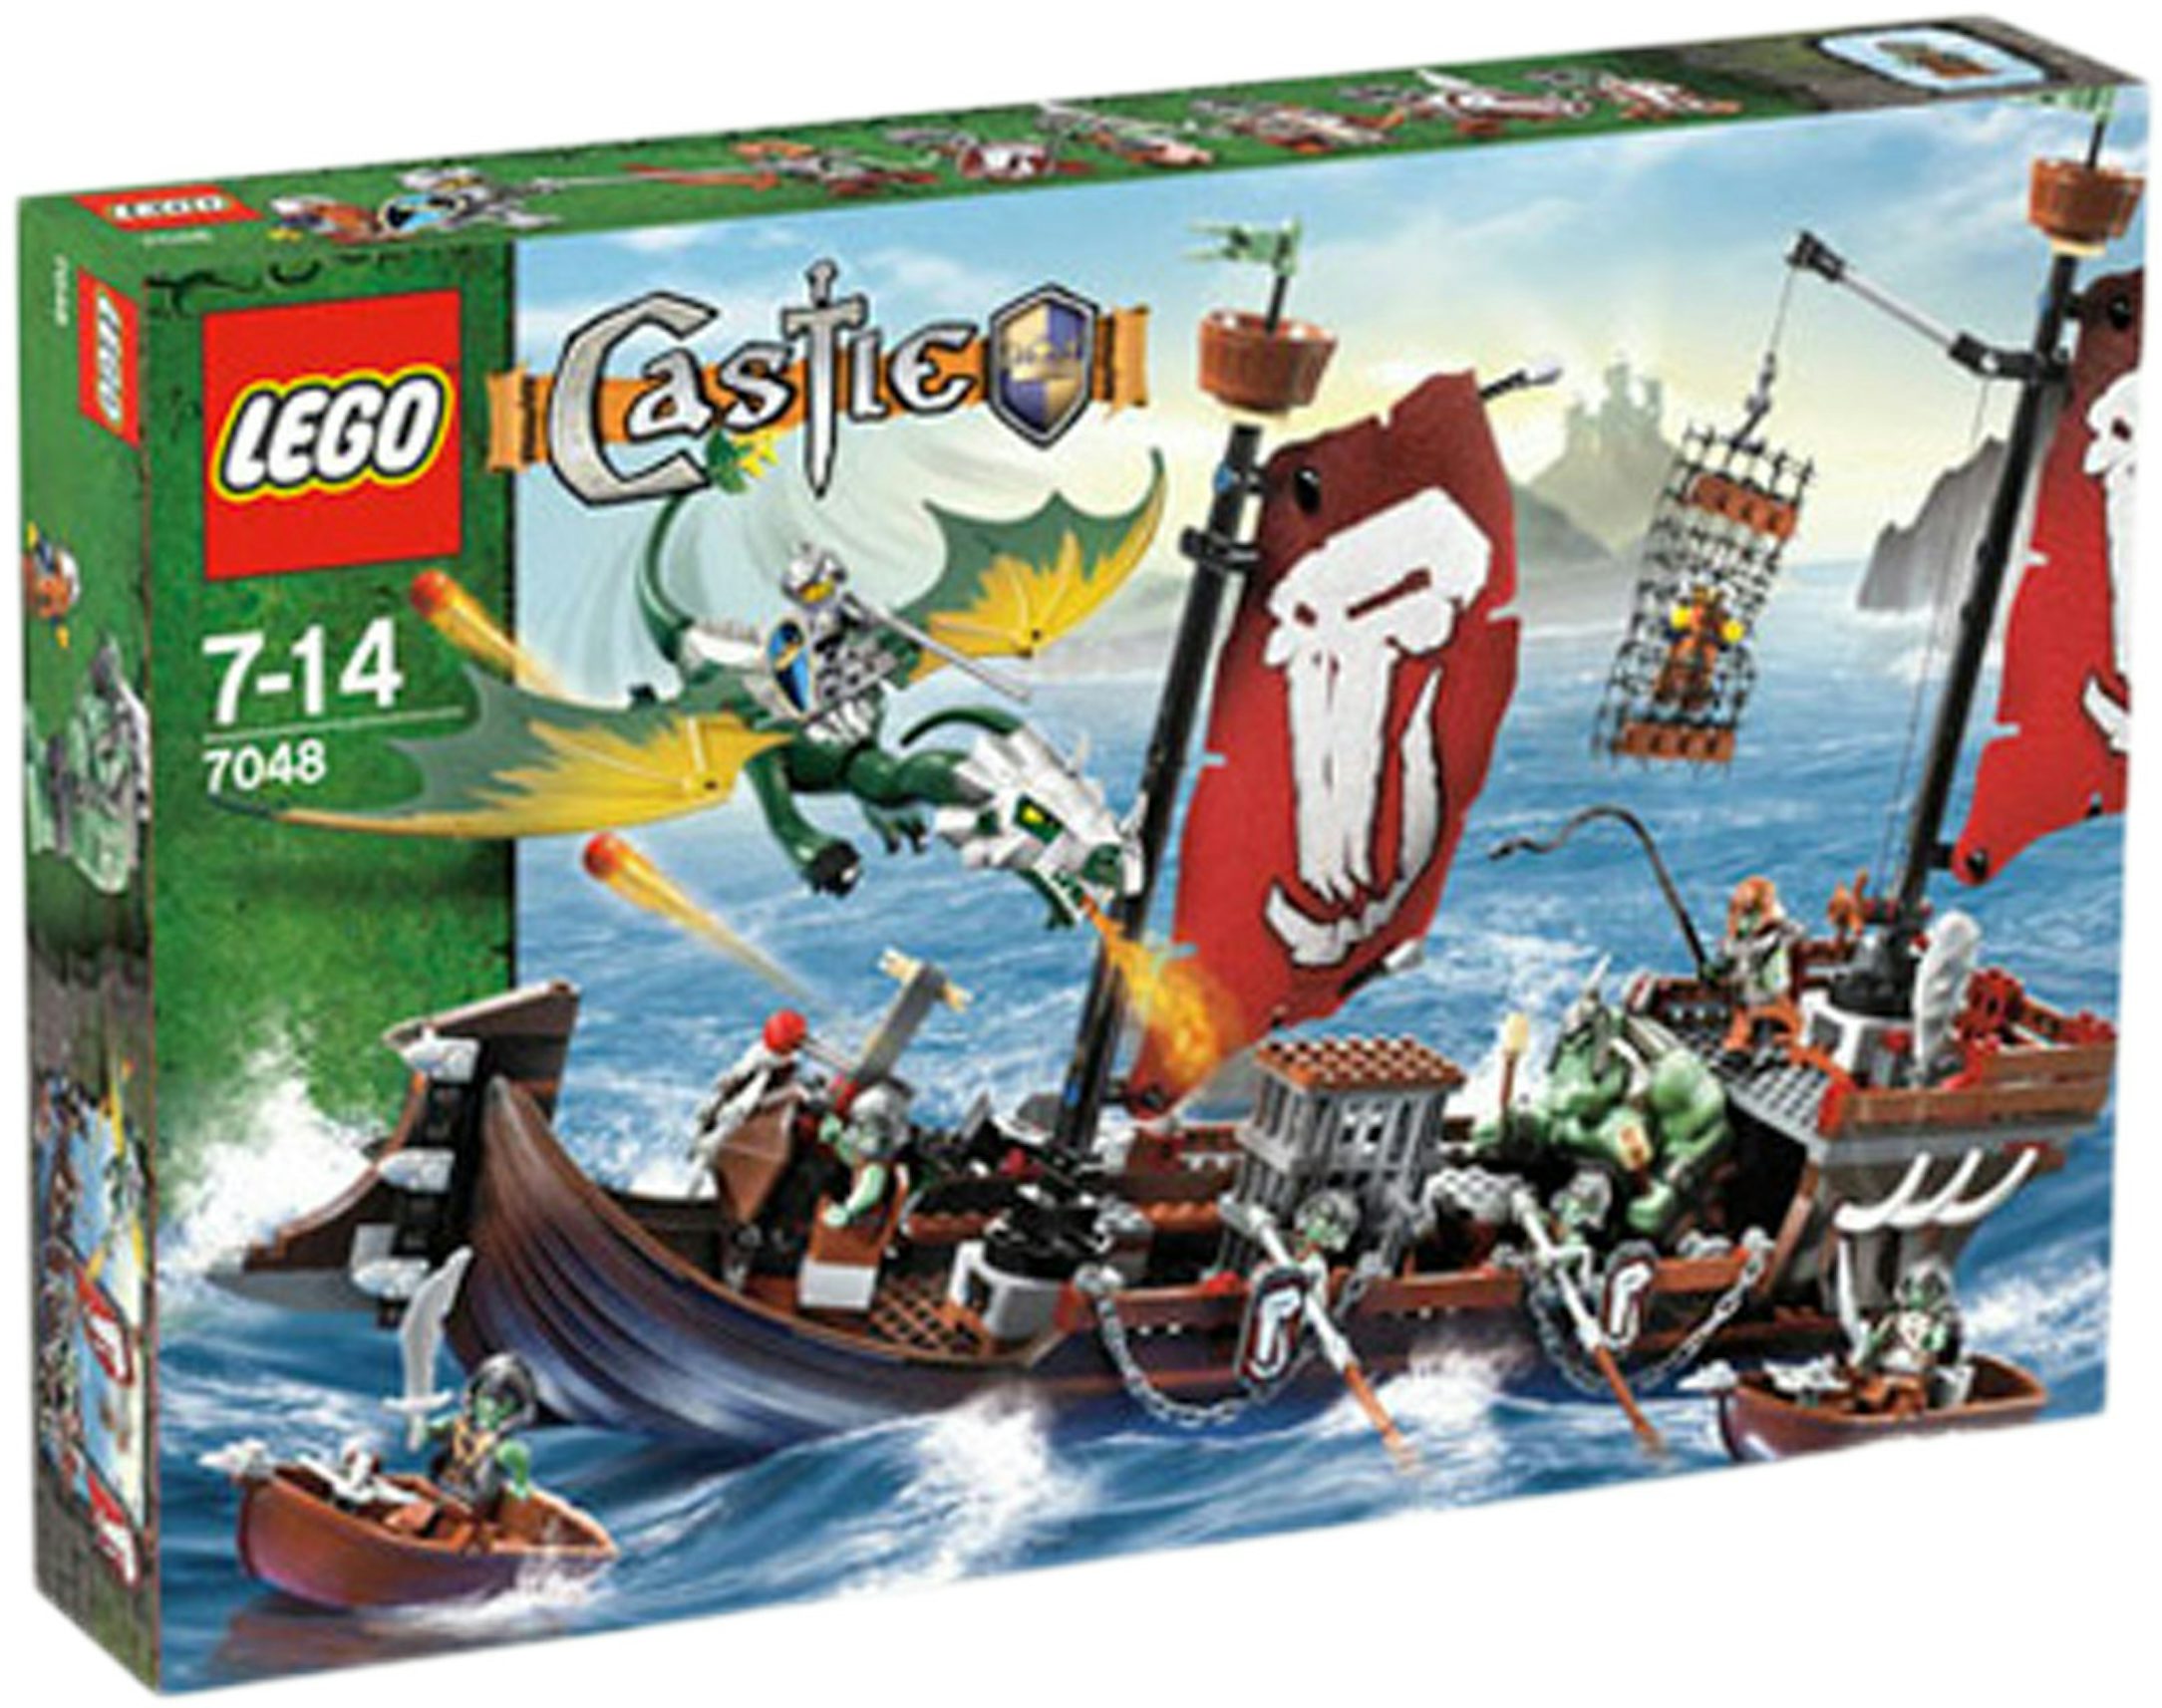 tapperhed Koncession lille LEGO Castle Troll Warship Set 7048 - US